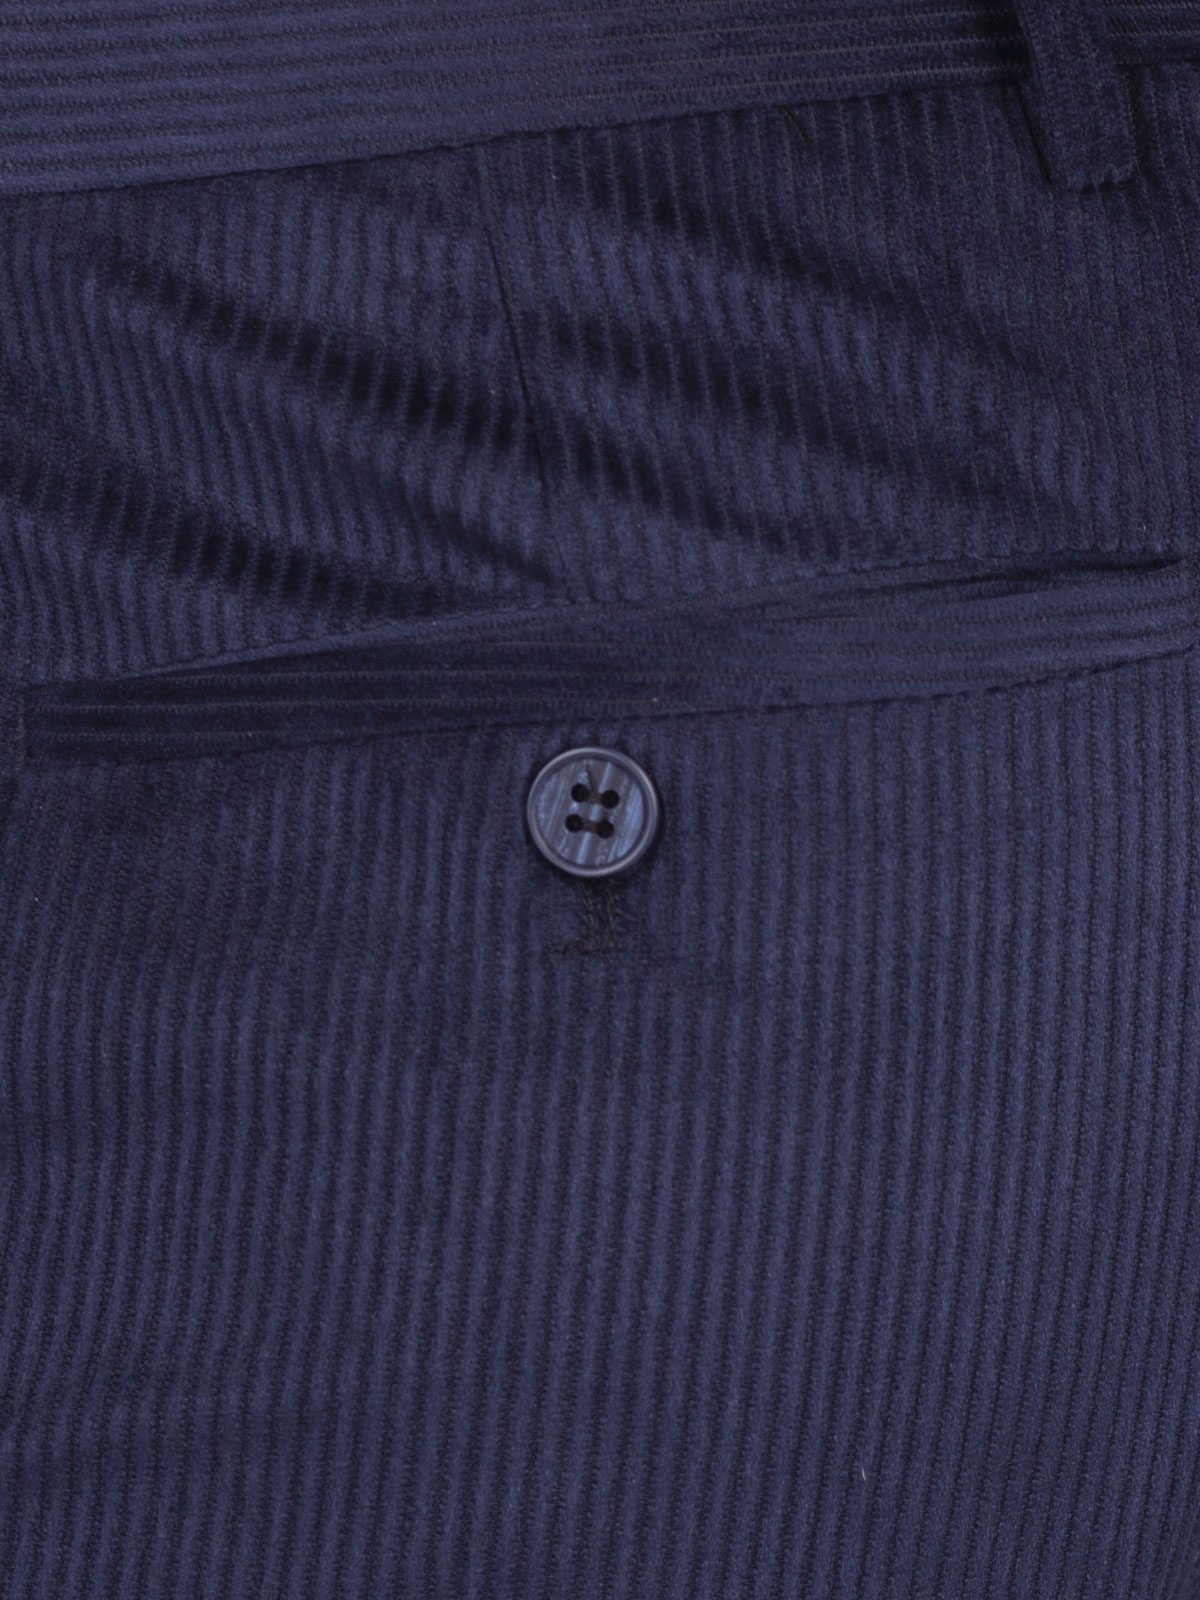 Σκούρο μπλε ριγέ παντελόνι - 60230 € 44.43 img2